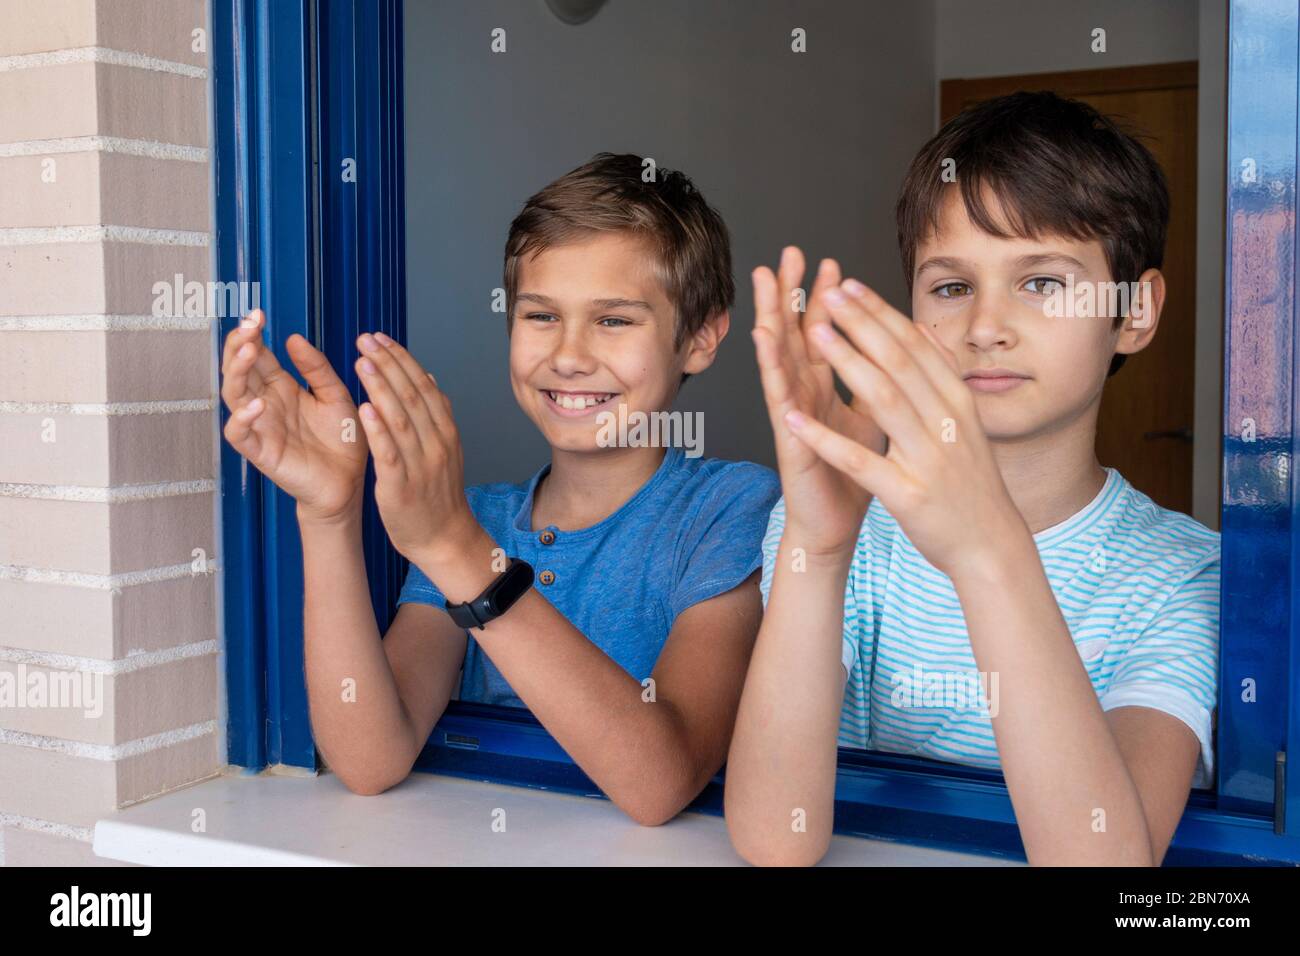 Glücklich lächelnde Kinder klatschen Hände, applaudieren vom Fenster, um Ärzte, Krankenschwestern, Krankenhausangestellte während Coronavirus Covid-19 Pandemie Quarantäne zu unterstützen Stockfoto